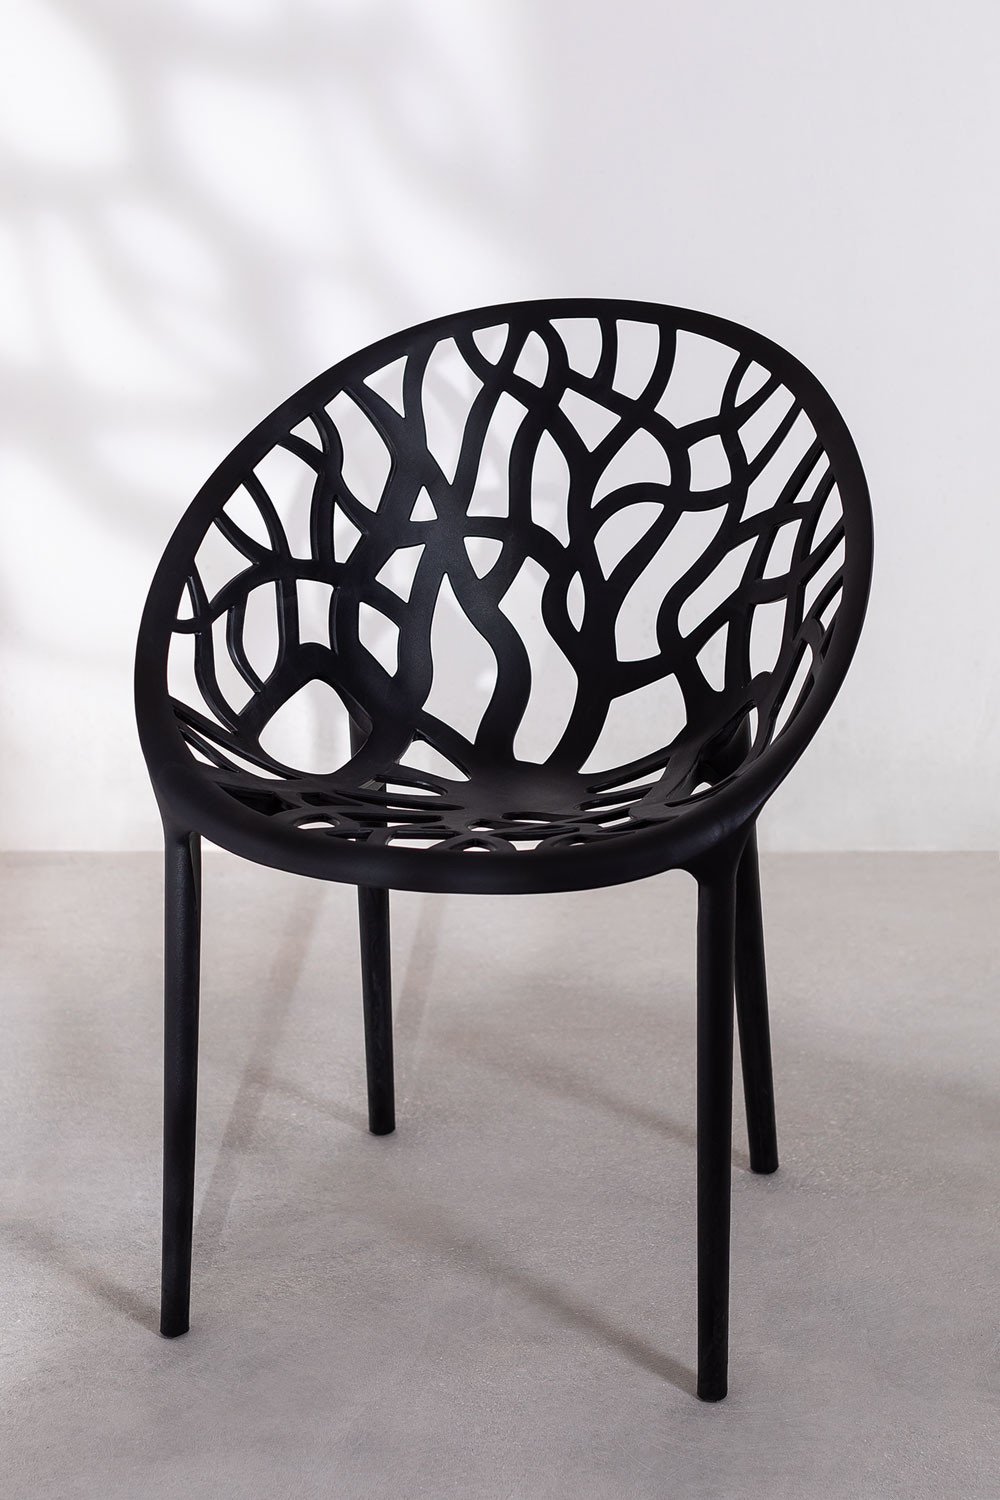 Chaise de jardin empilable en métal galvanisé noir Zelie (lot de 4) - Givex